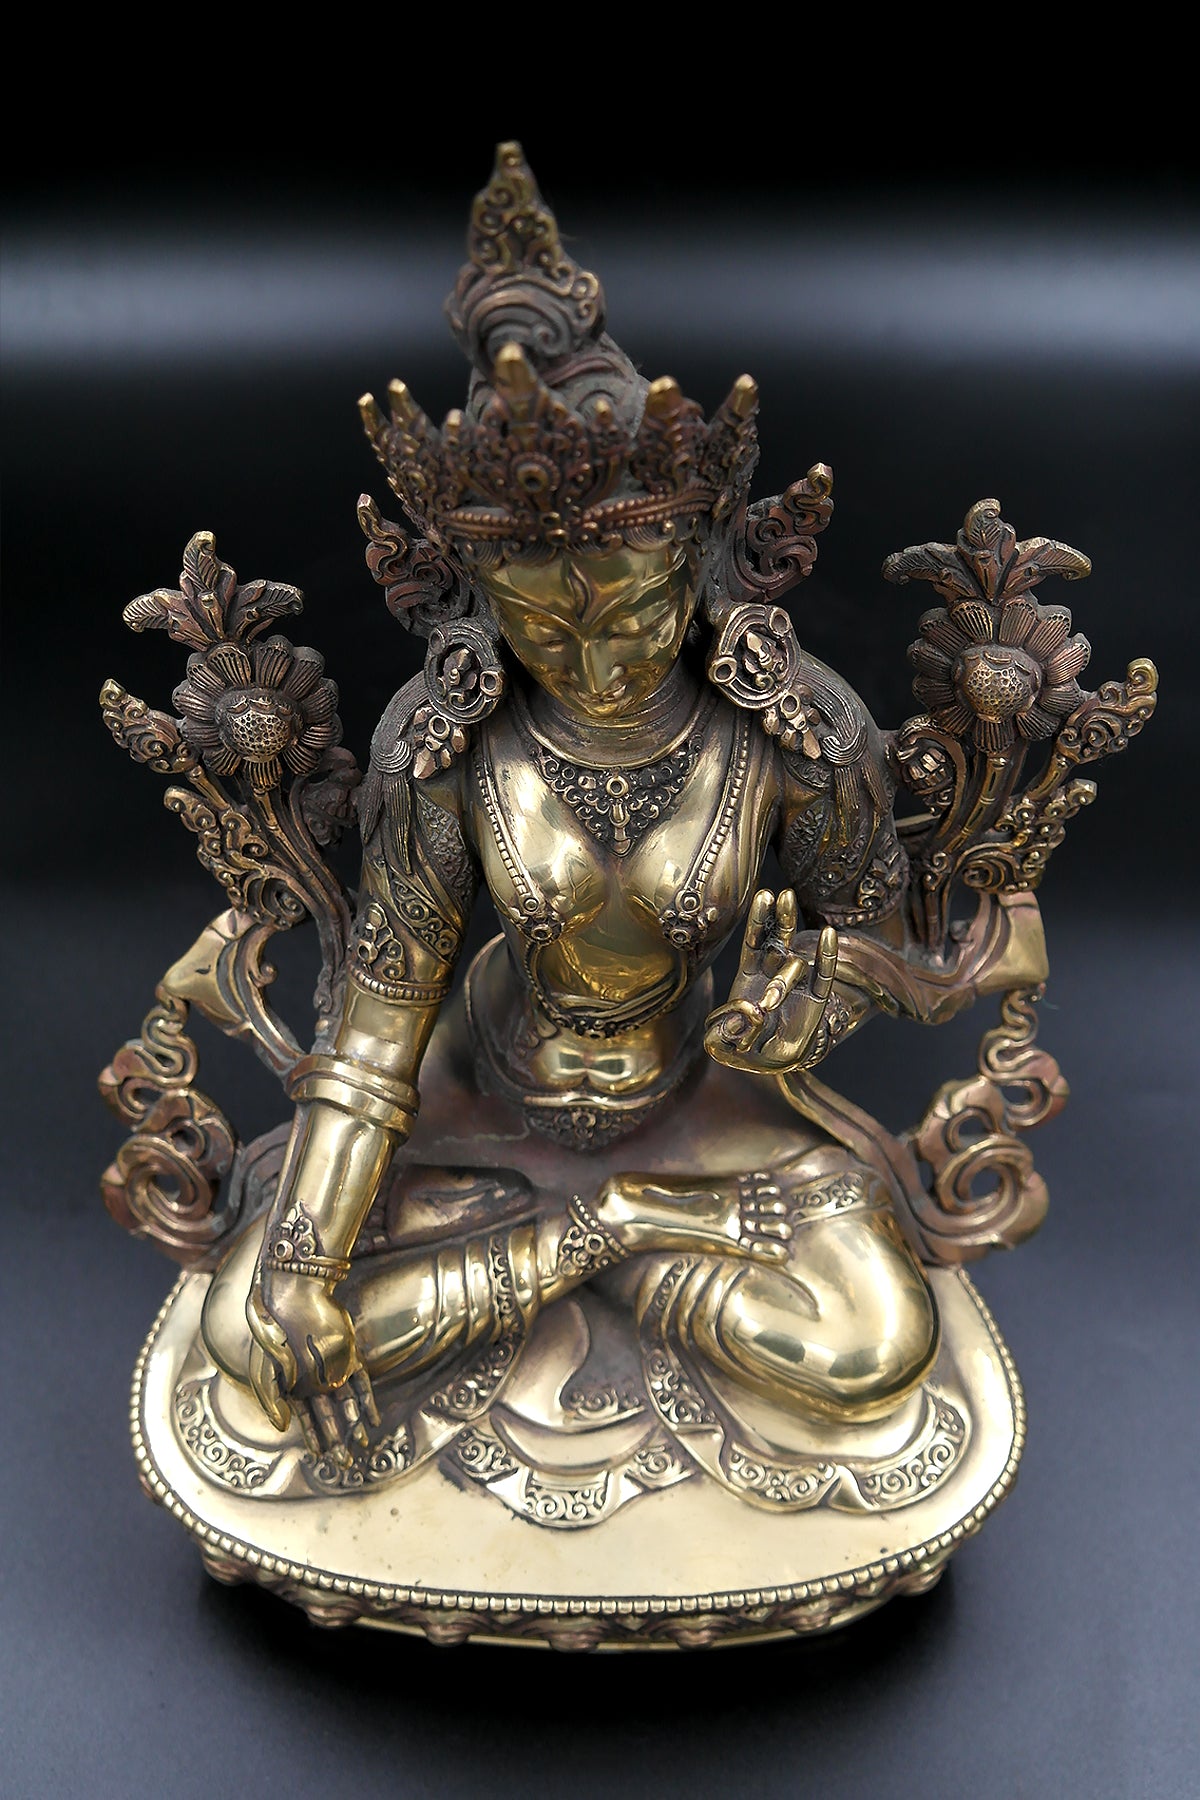 Gold toned Tibetan White Tara Statue 12"